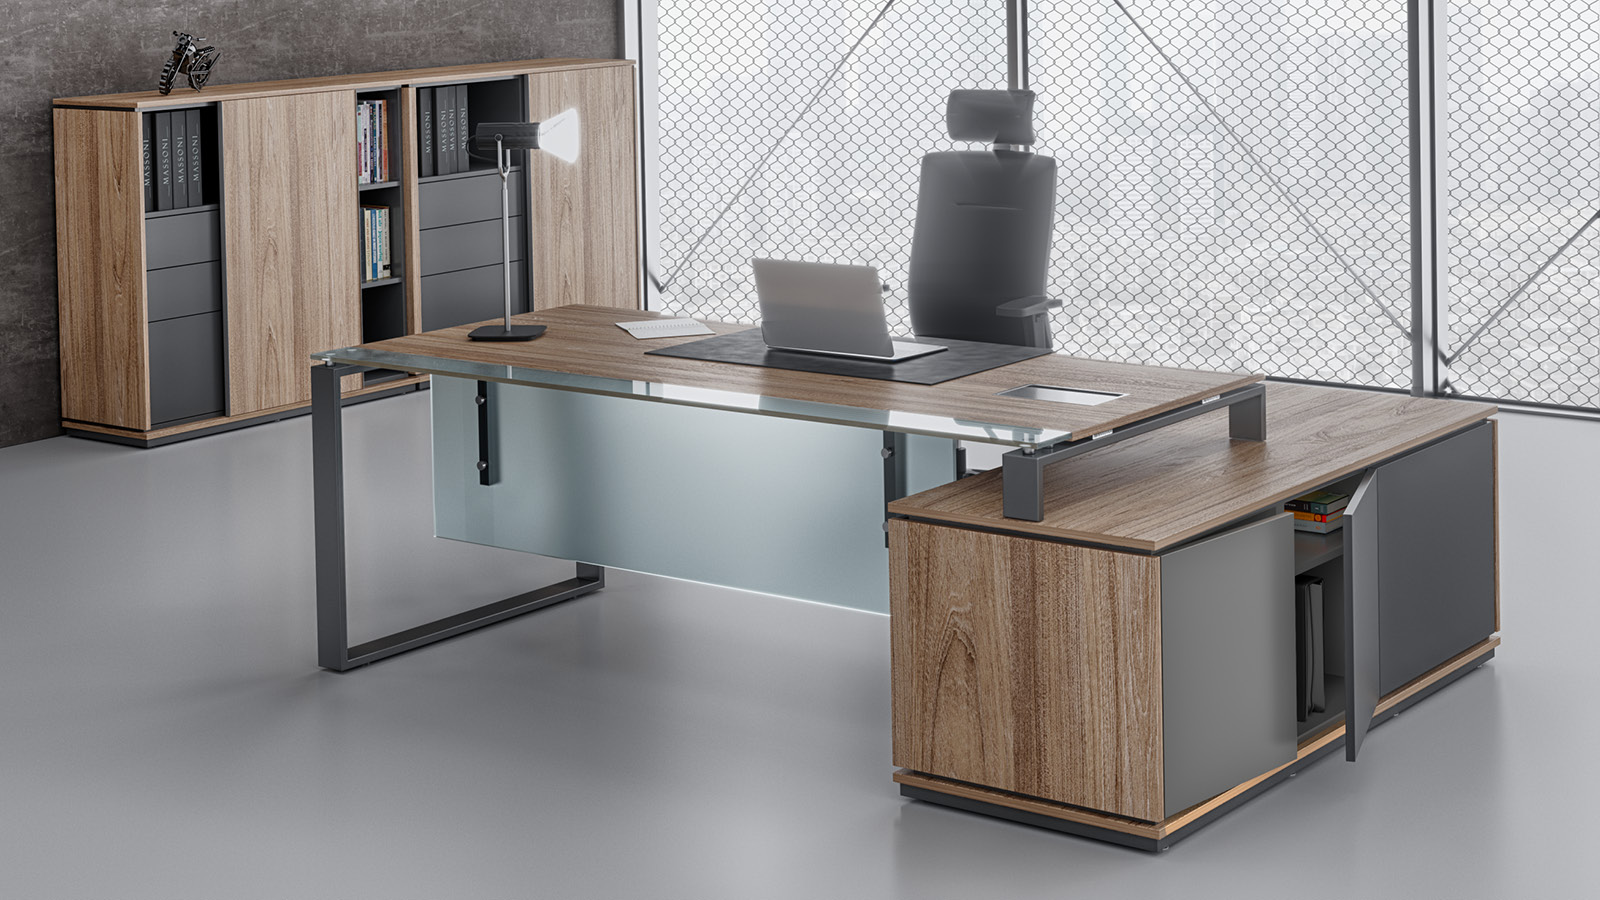 Meble w nowoczesnym biurze - biurko z blatem umieszczonym na dystansach oraz szklaną wstawką, obok - szafa w odcieniu wiązu.